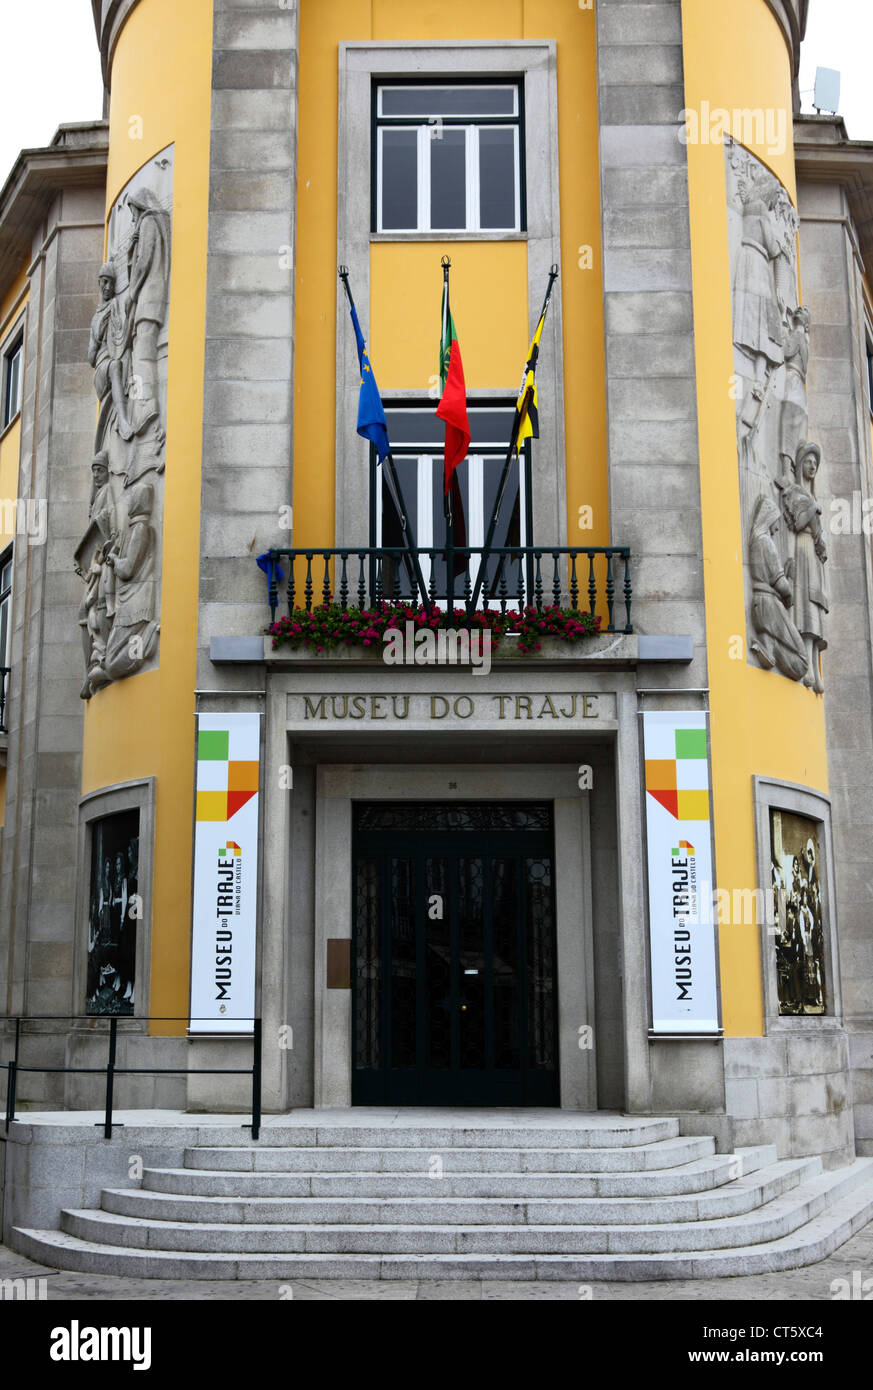 Entrance to Traditional Clothes Museum / Museu do Traje , Praca da Republica , Viana do Castelo , northern Portugal Stock Photo